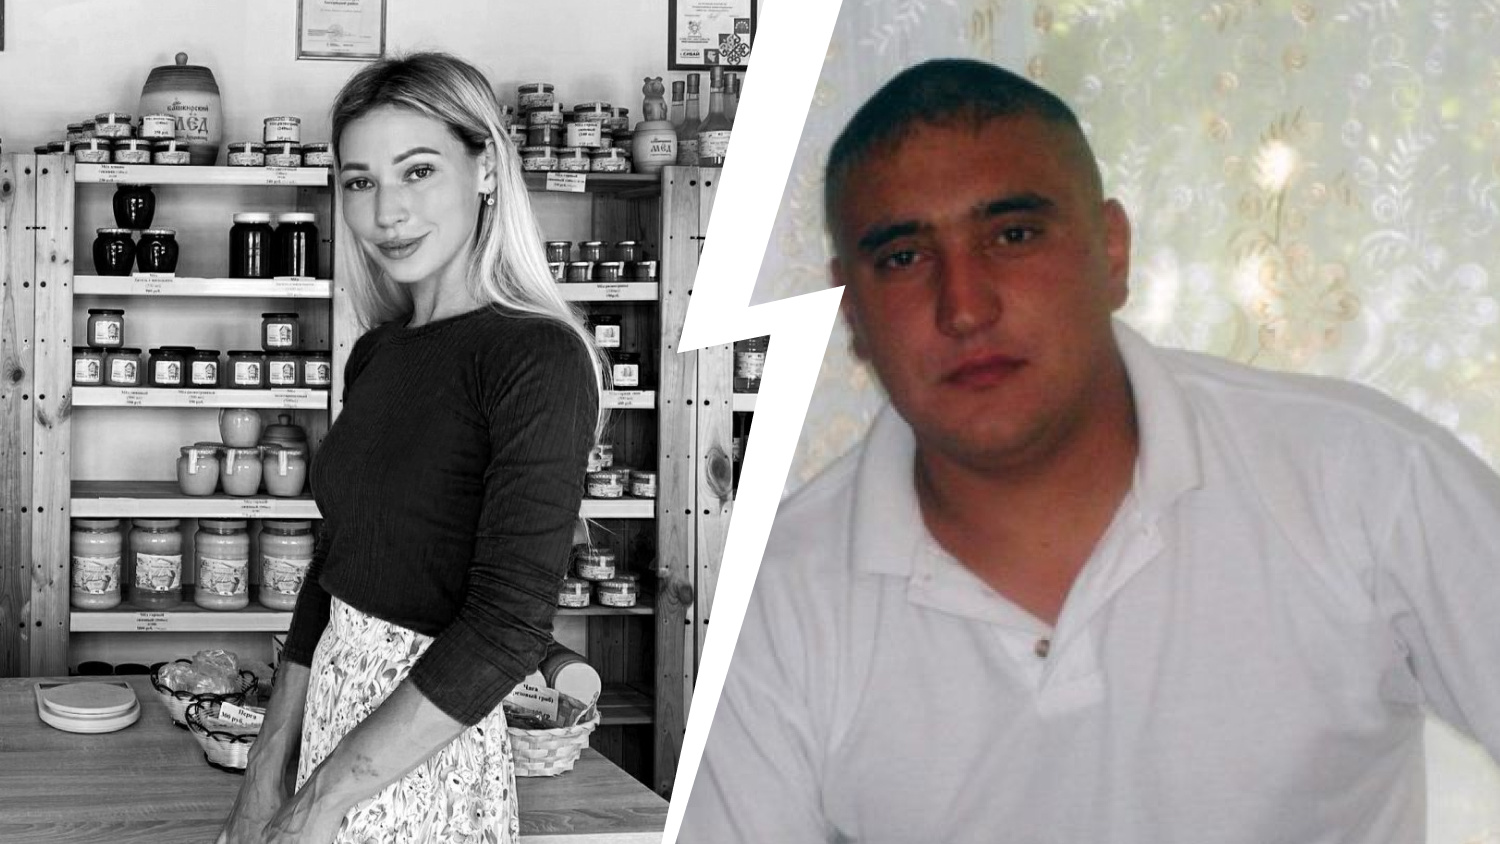 «Нет тела — нет дела», — заявили в полиции. Фермер в Башкирии убил жену-чиновницу с молчаливого согласия правоохранителей?